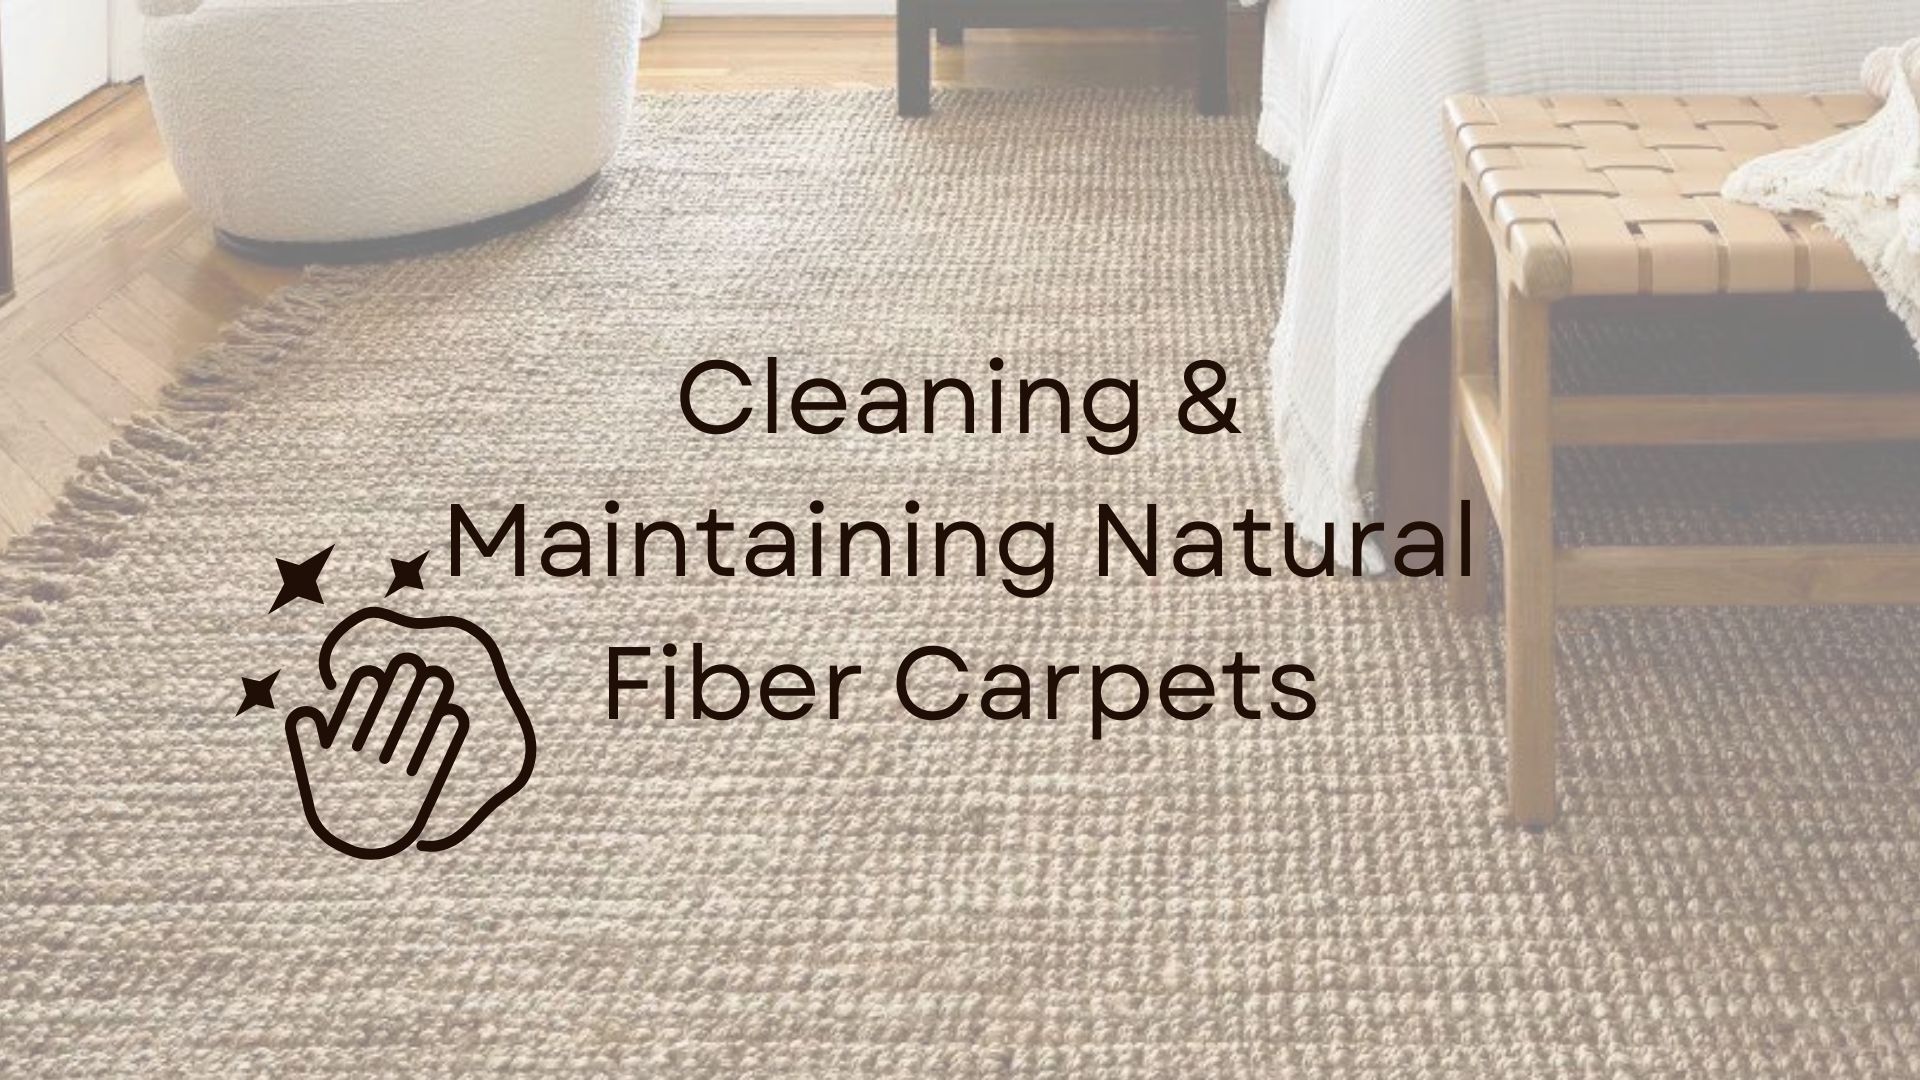 Carpet Cleaning Service Lexington Ky